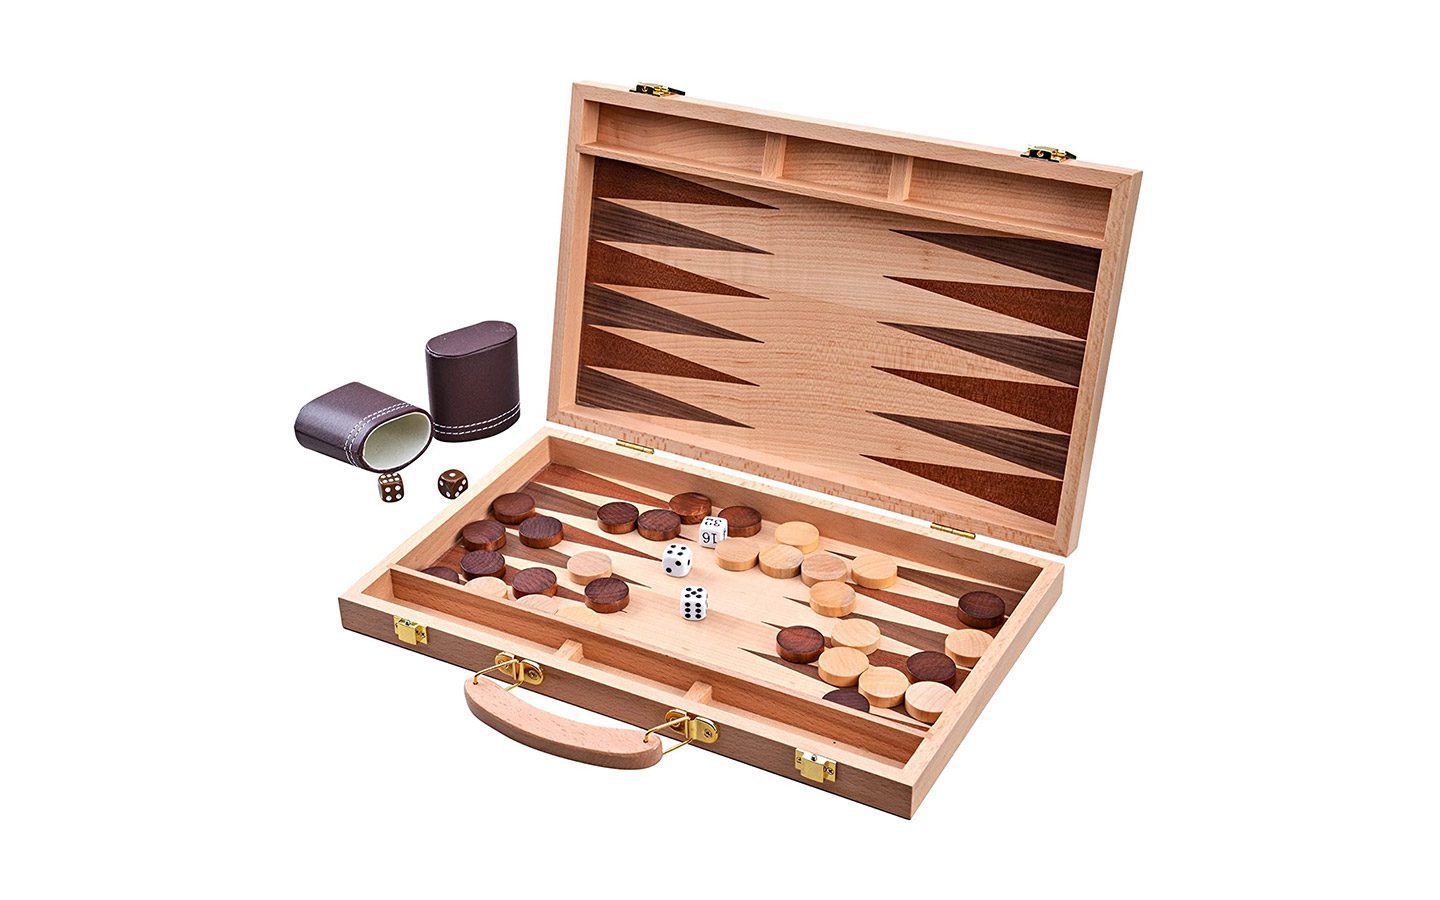 Jaques-Backgammon-set